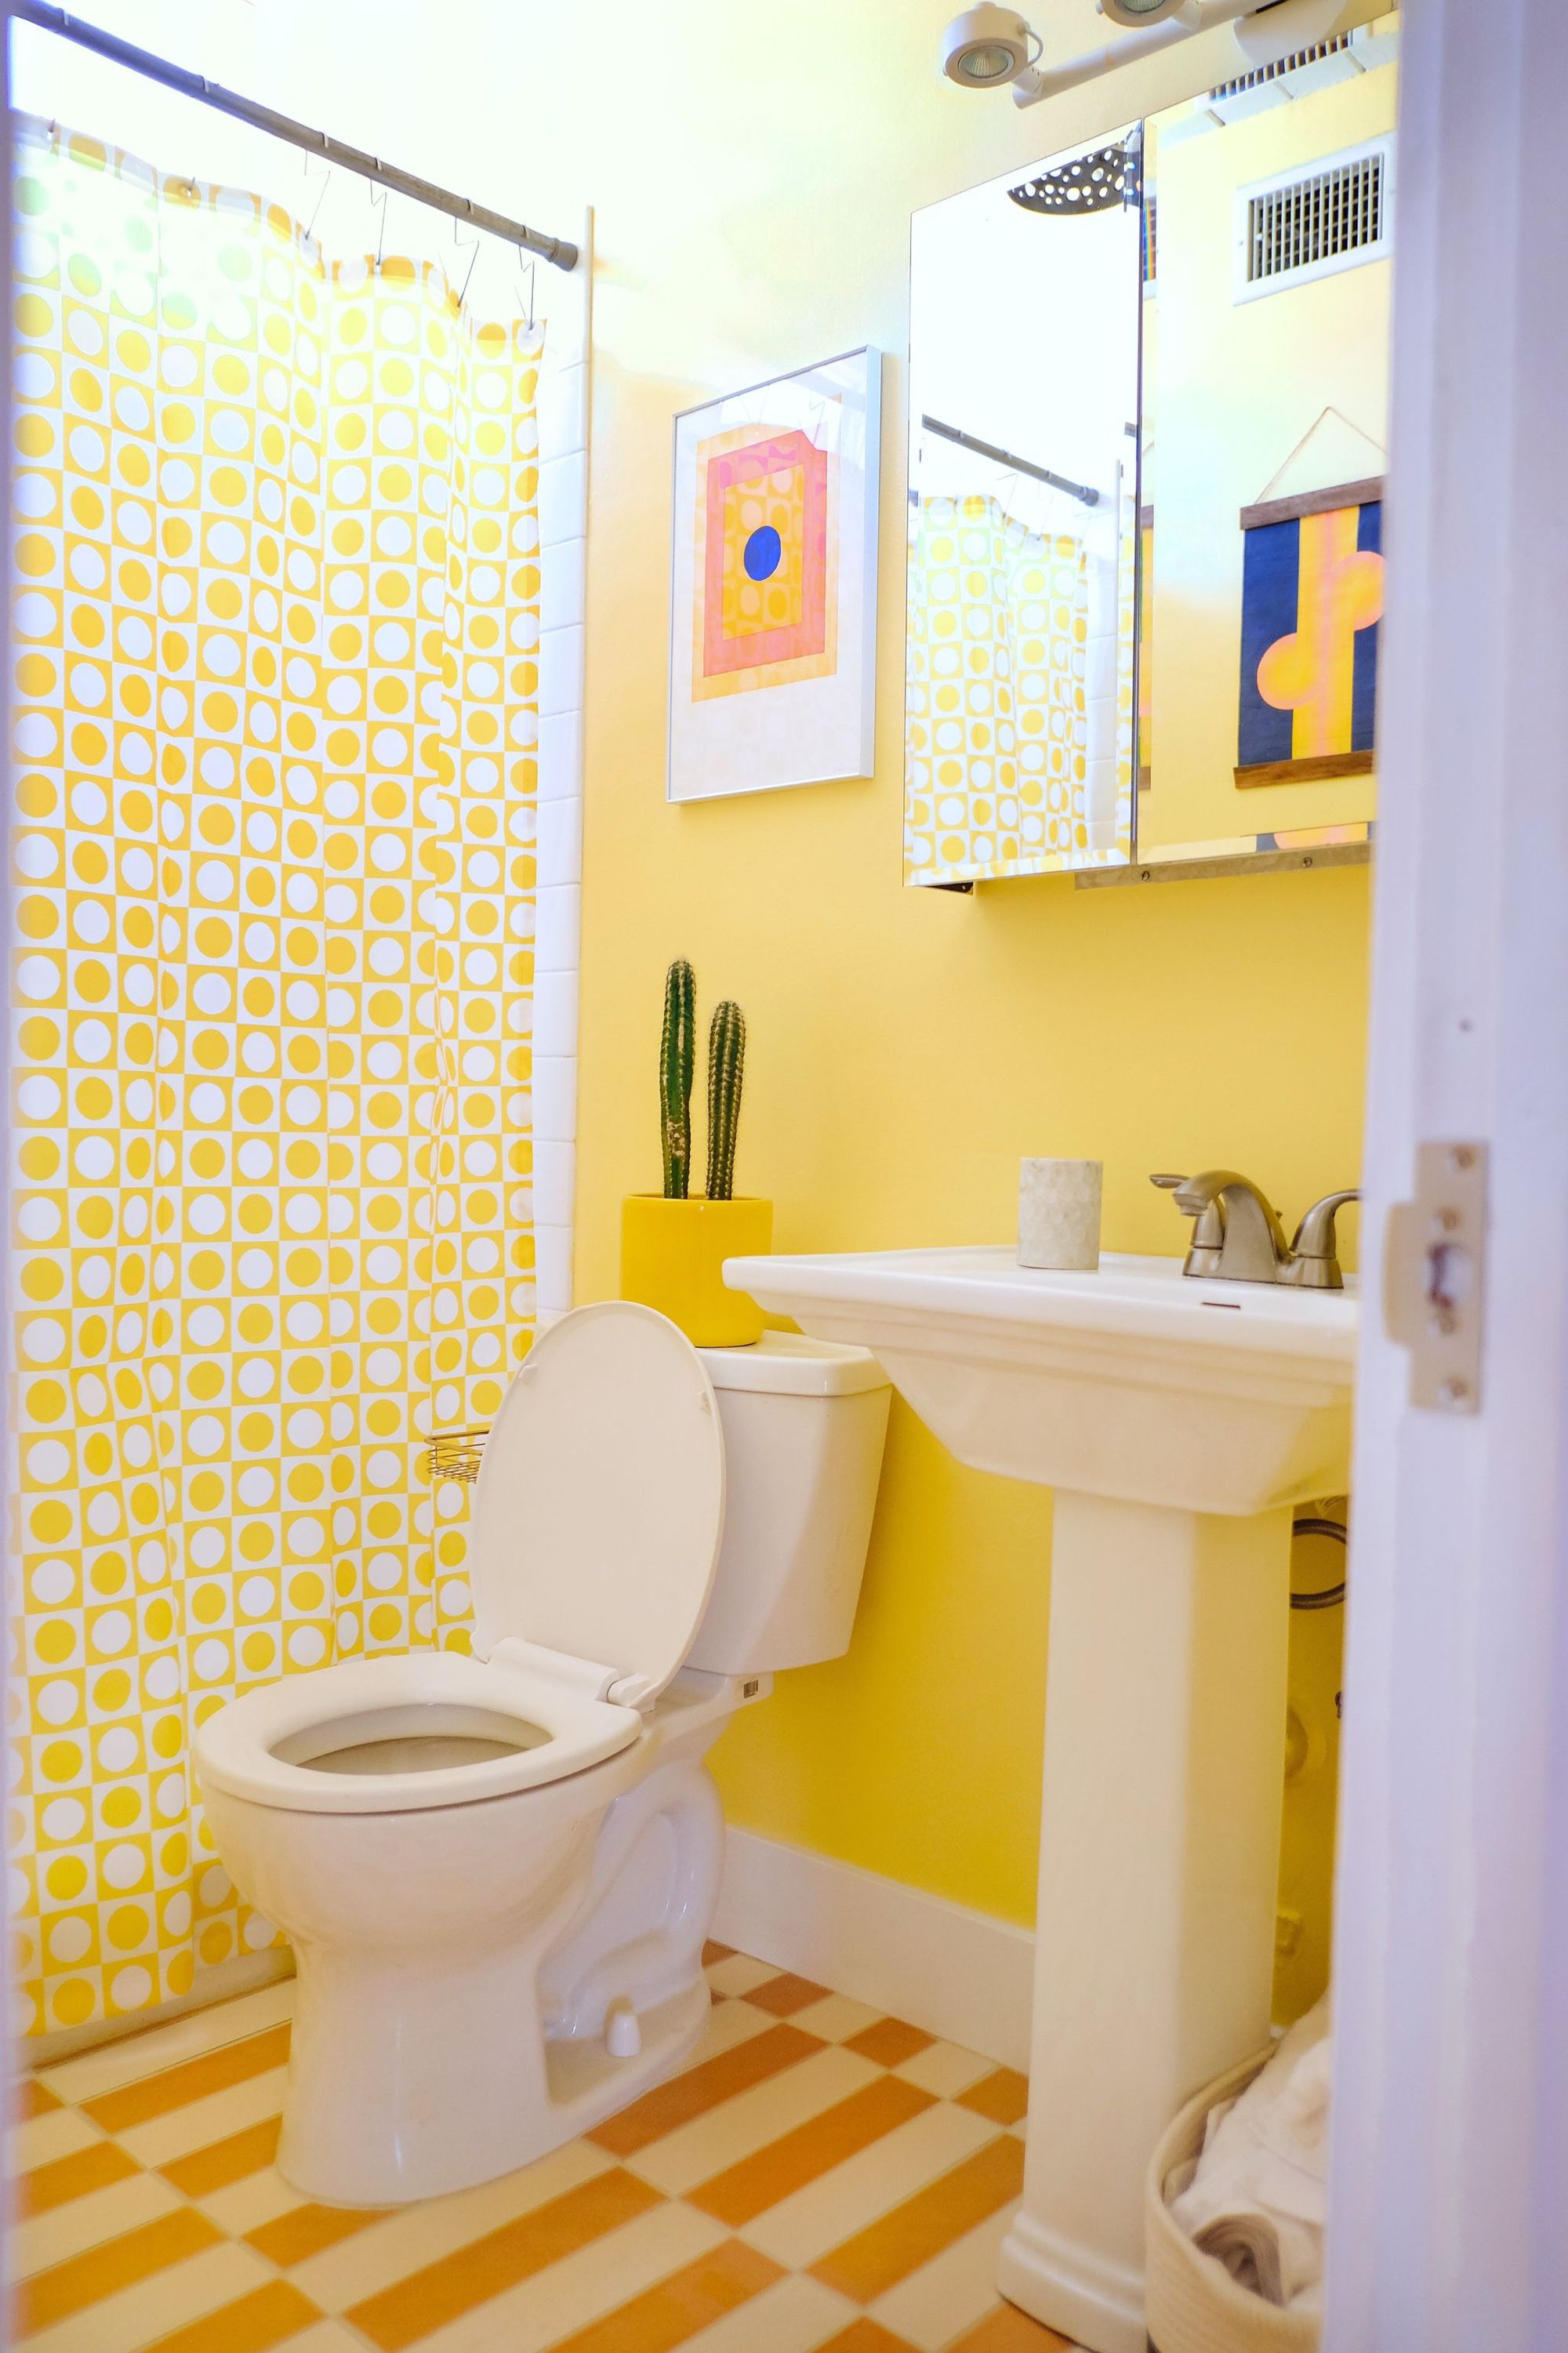 Bí quyết cho căn phòng tắm luôn tươi sáng, sinh động là bổ sung gam màu vàng nắng - Ảnh 1.